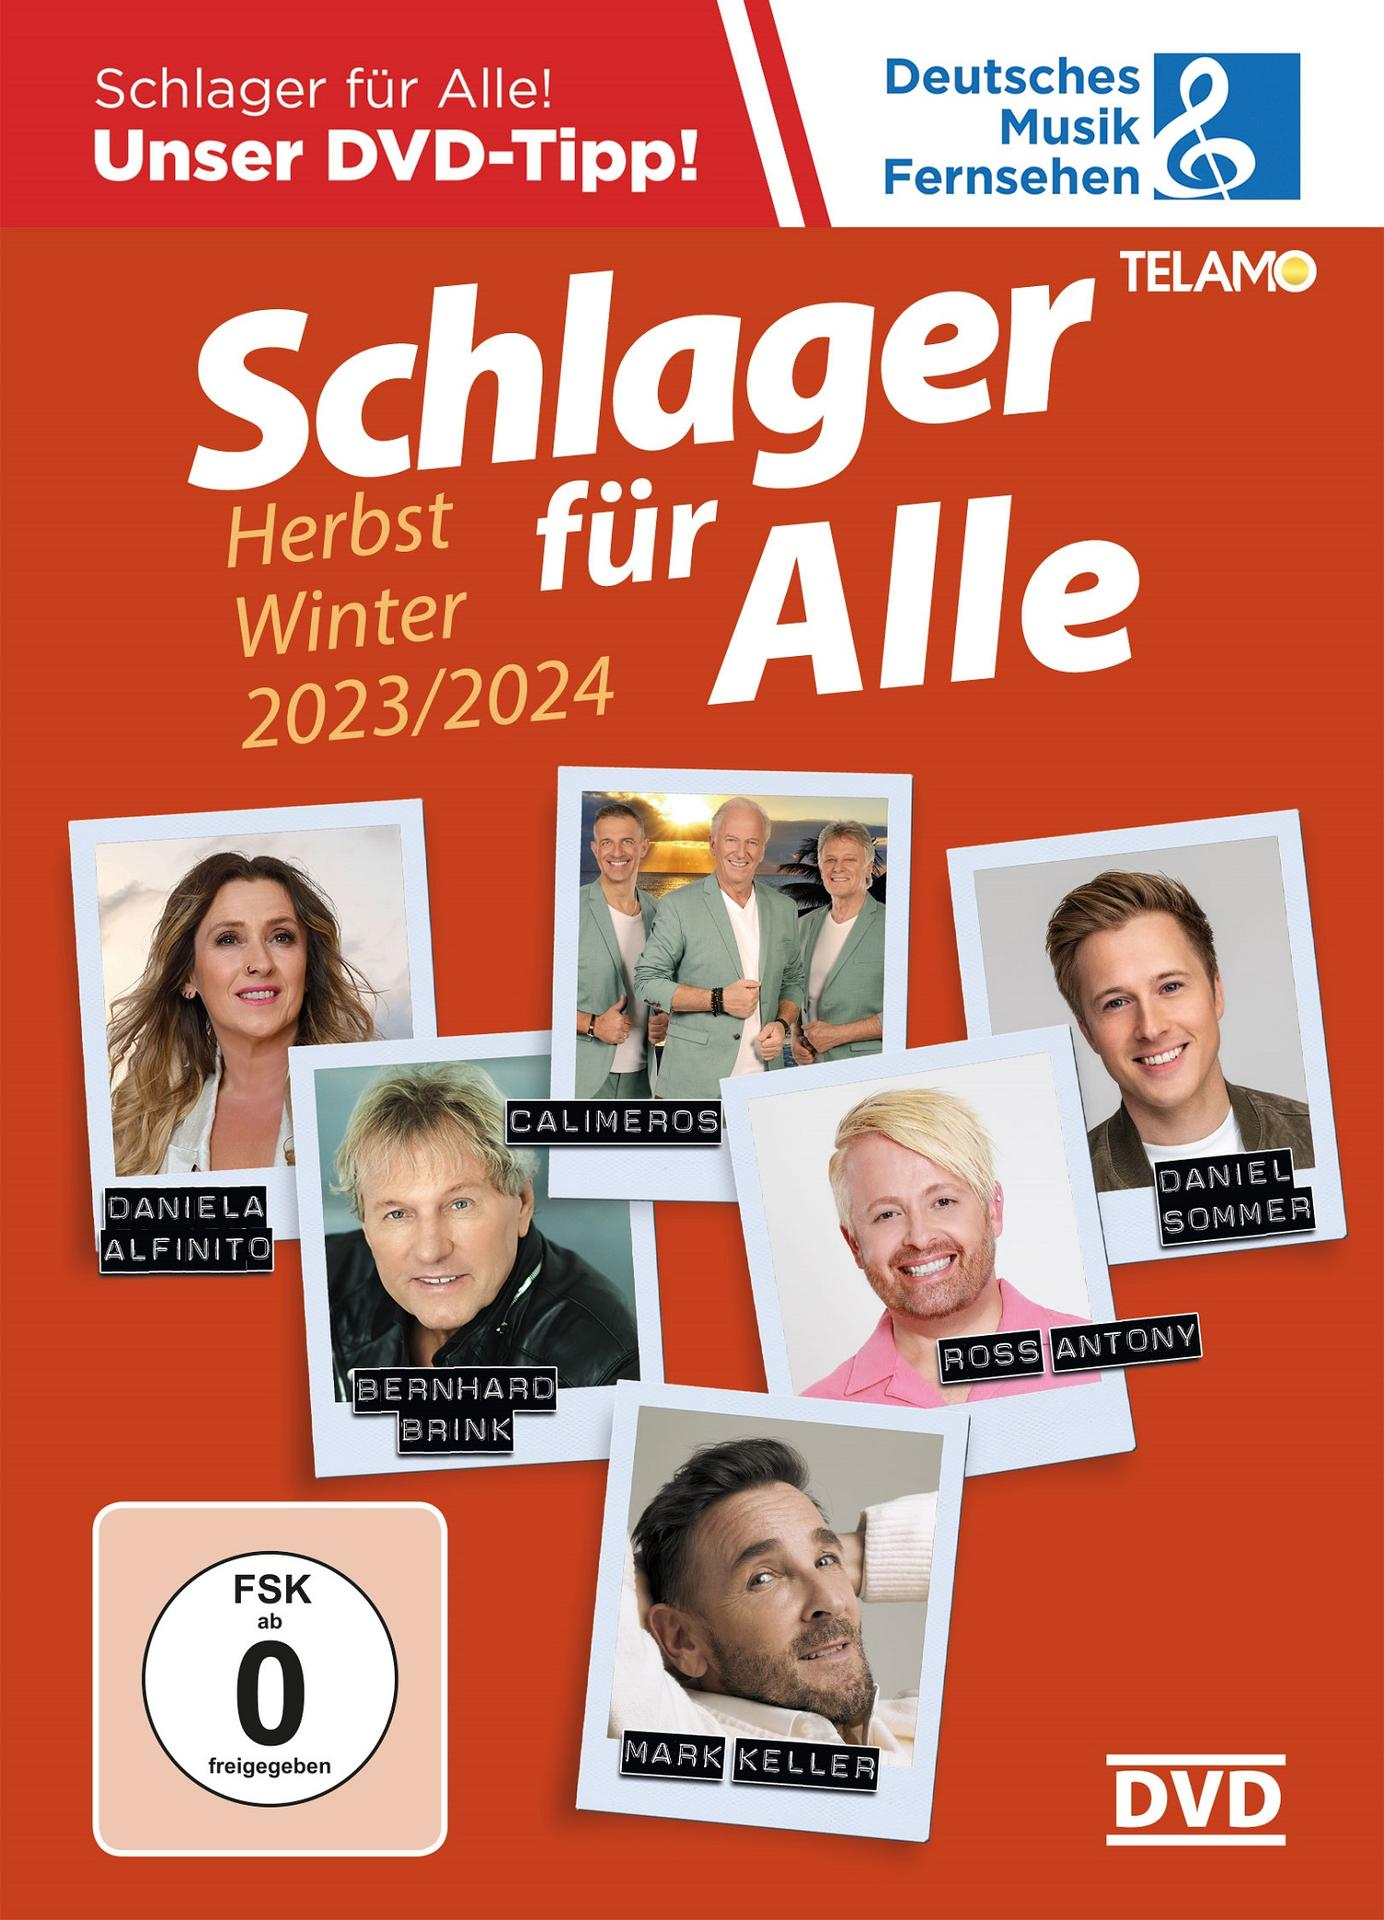 VARIOUS - Schlager für Alle:Herbst/Winter (DVD) - 2023/2024